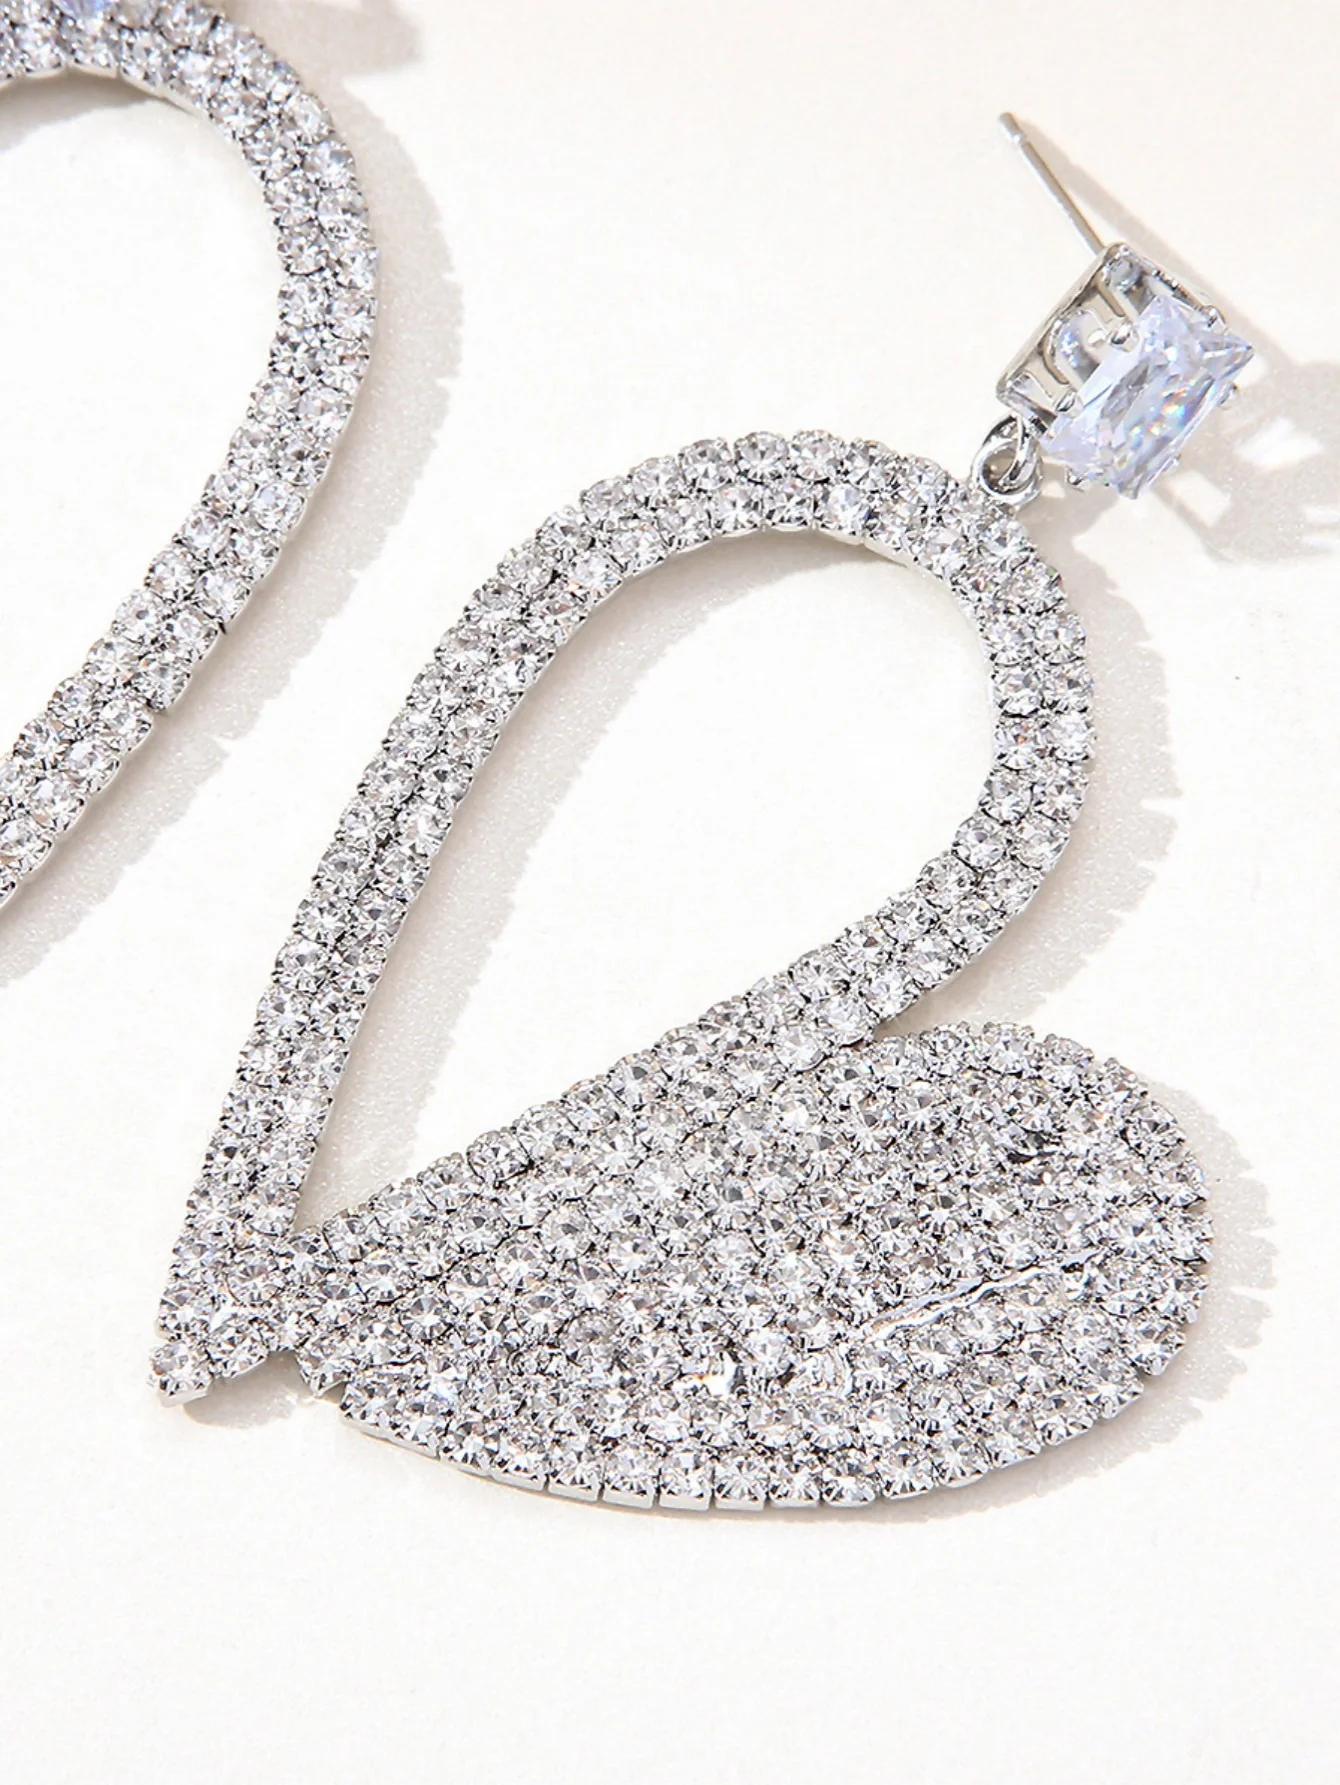 Rhinestone Heart Earrings In Silver